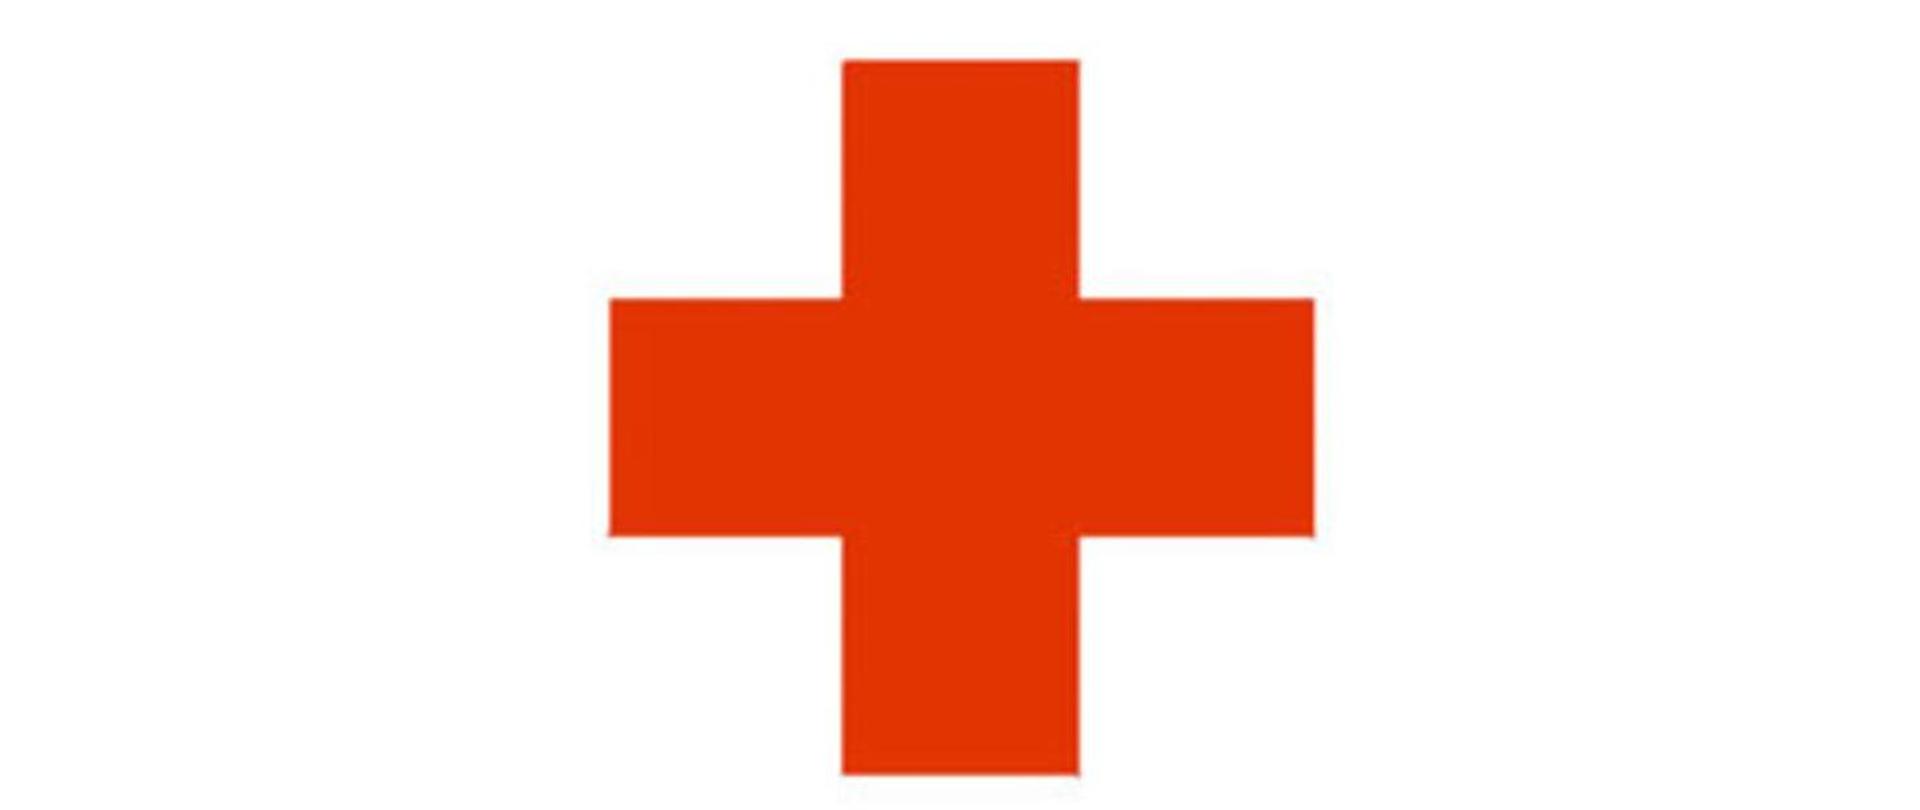 Na białym tle czerwony równoramienny krzyż - symbol organizacji Czerwonego Krzyża